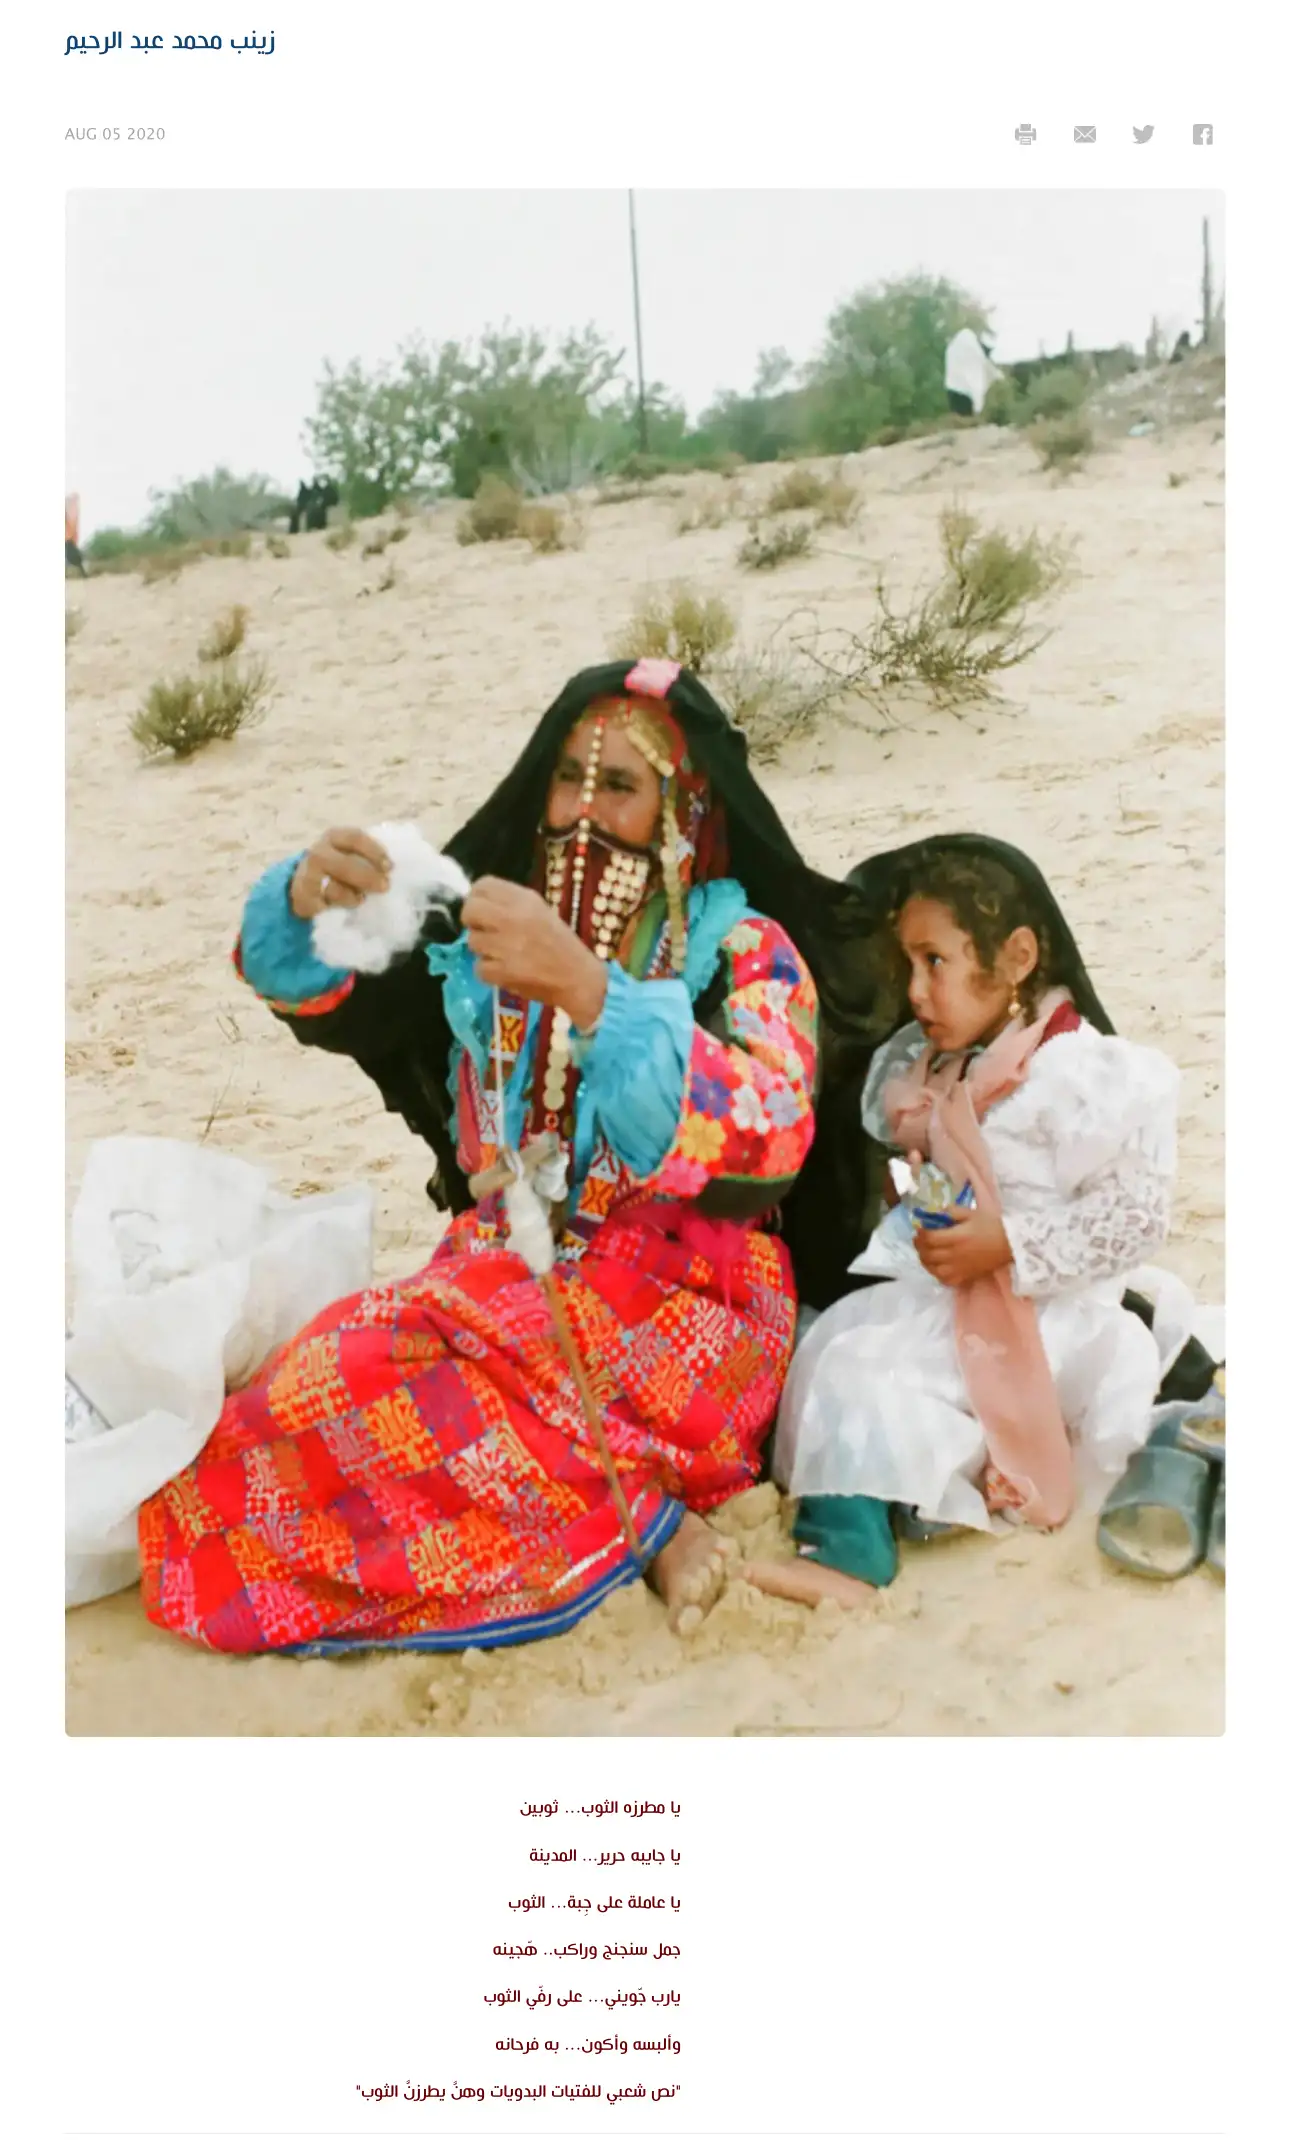 ثوب المرأة البدوية في شمال سيناء